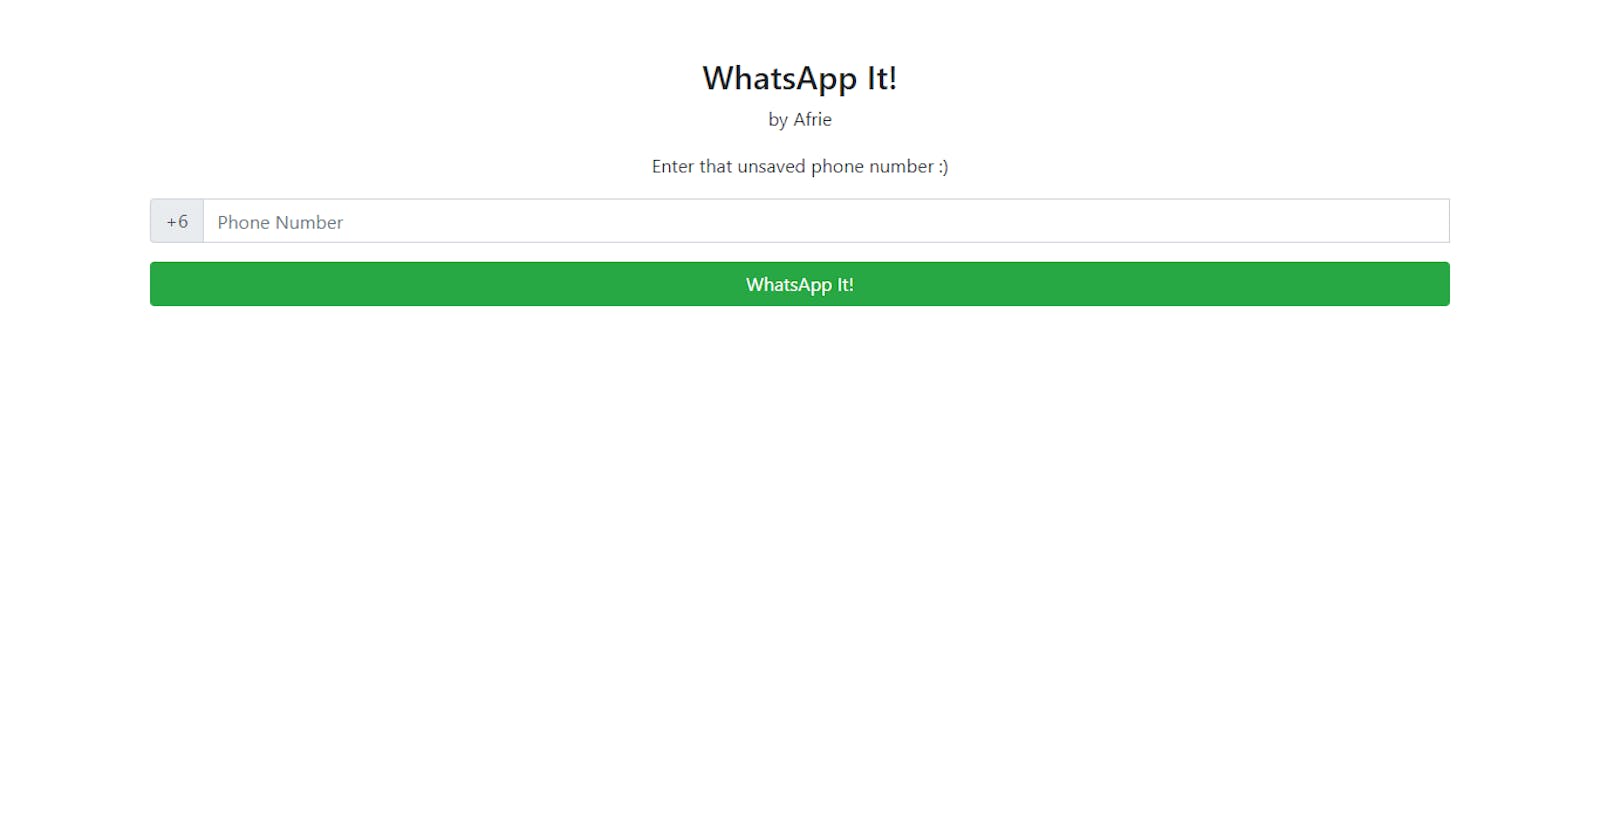 WhatsApp It! – My first useful app